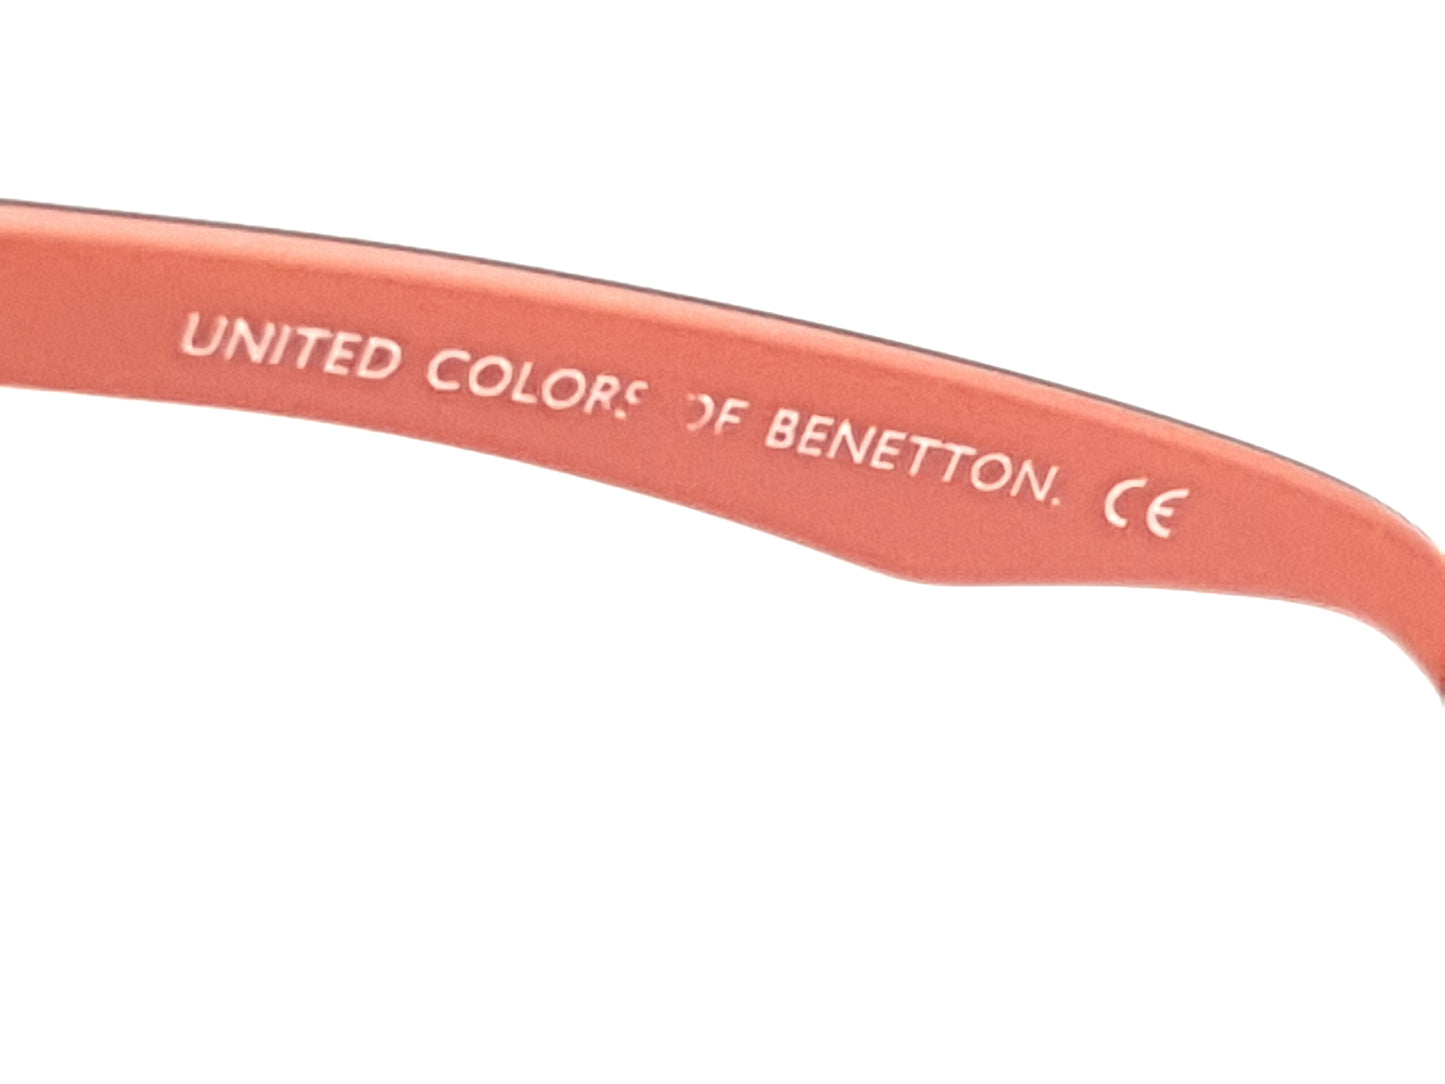 United Colors of Benetton BN349V03